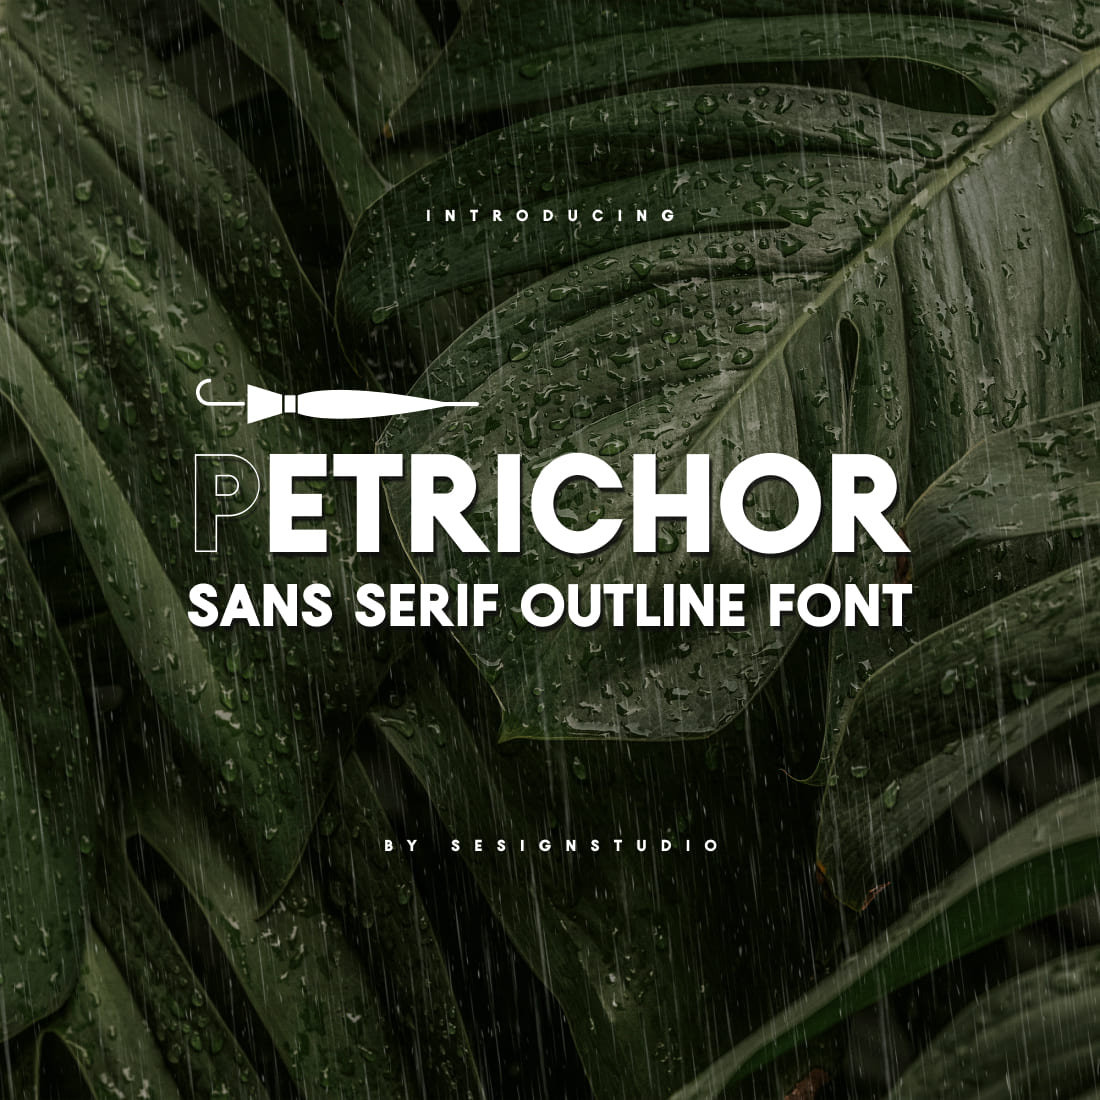 Petrichor Sans Serif Outline Font MasterBundles Main Cover.